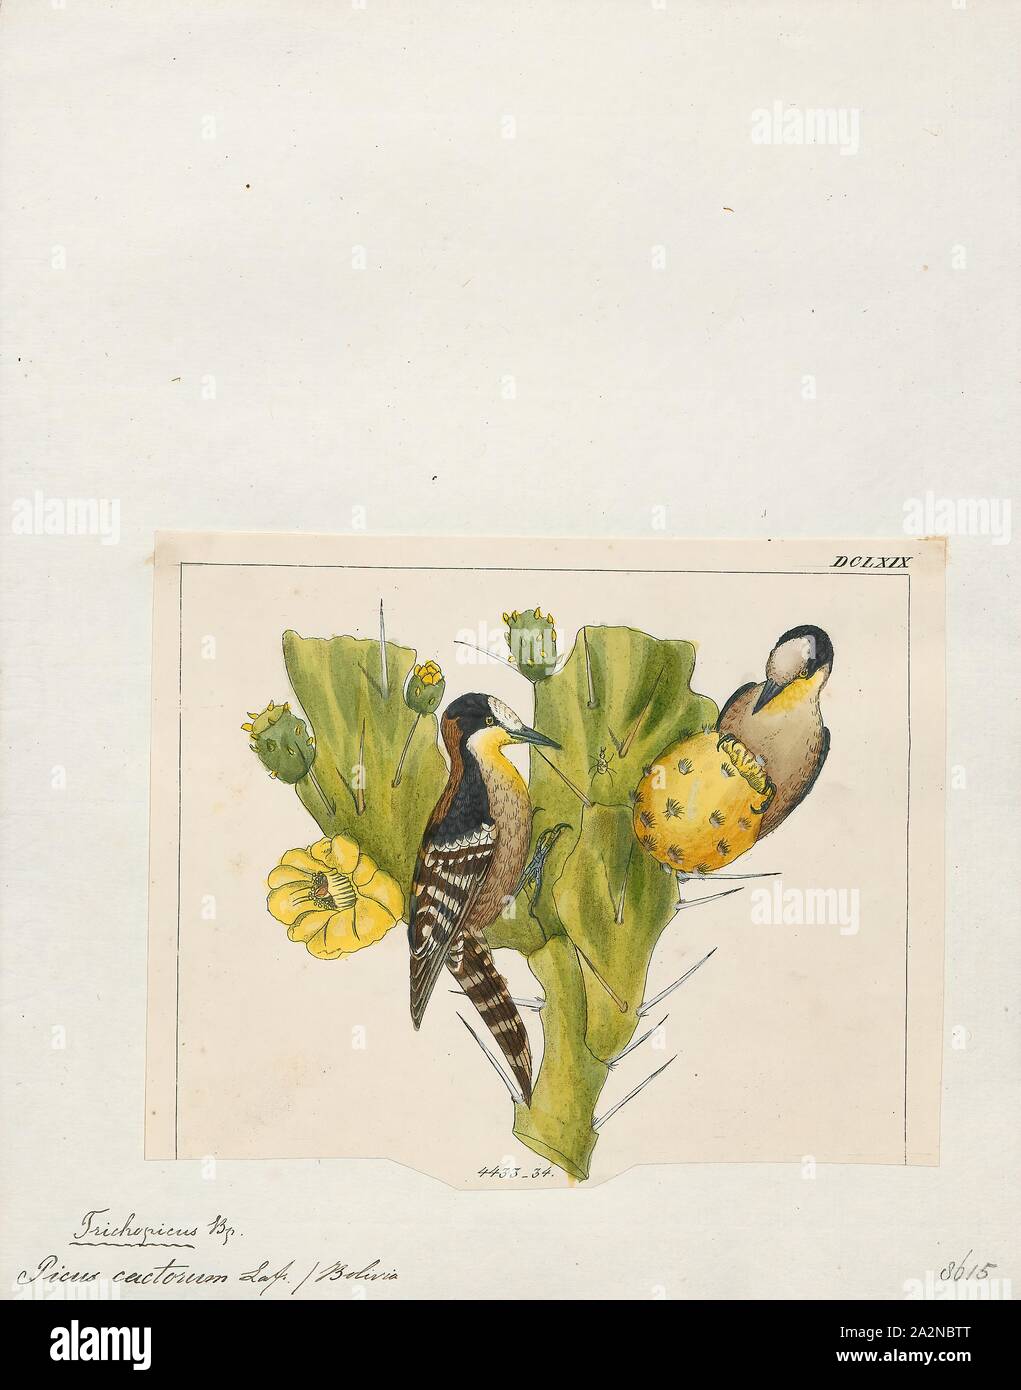 Picus cactorum, Print, 1820-1860 Stock Photo